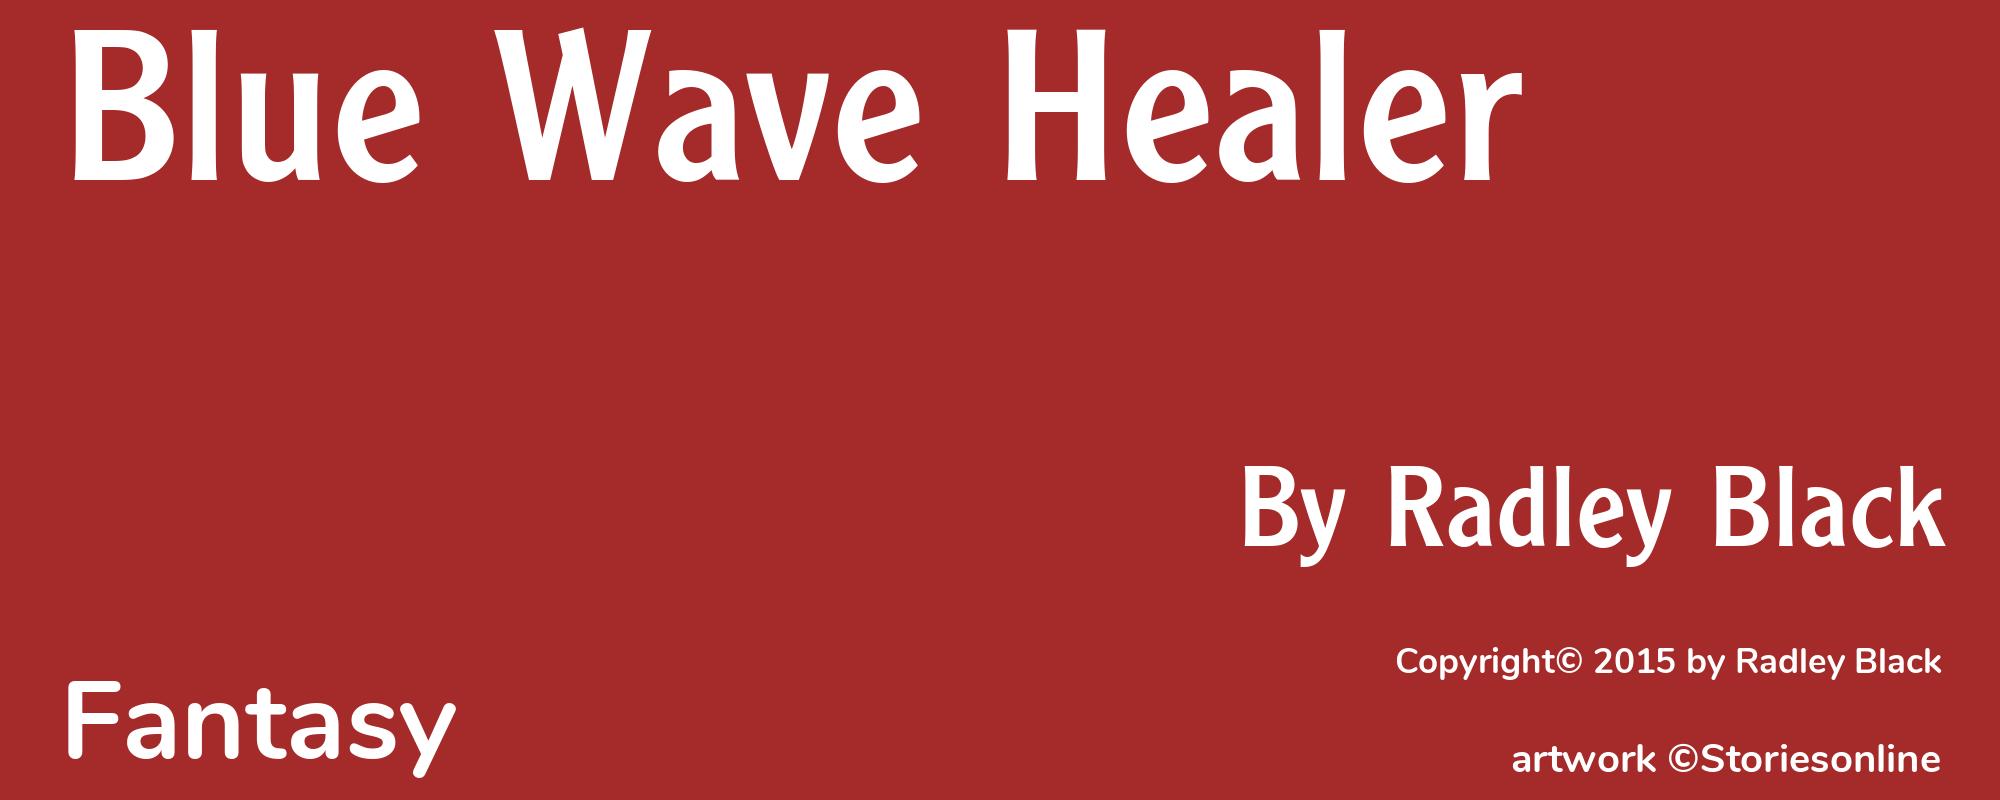 Blue Wave Healer - Cover